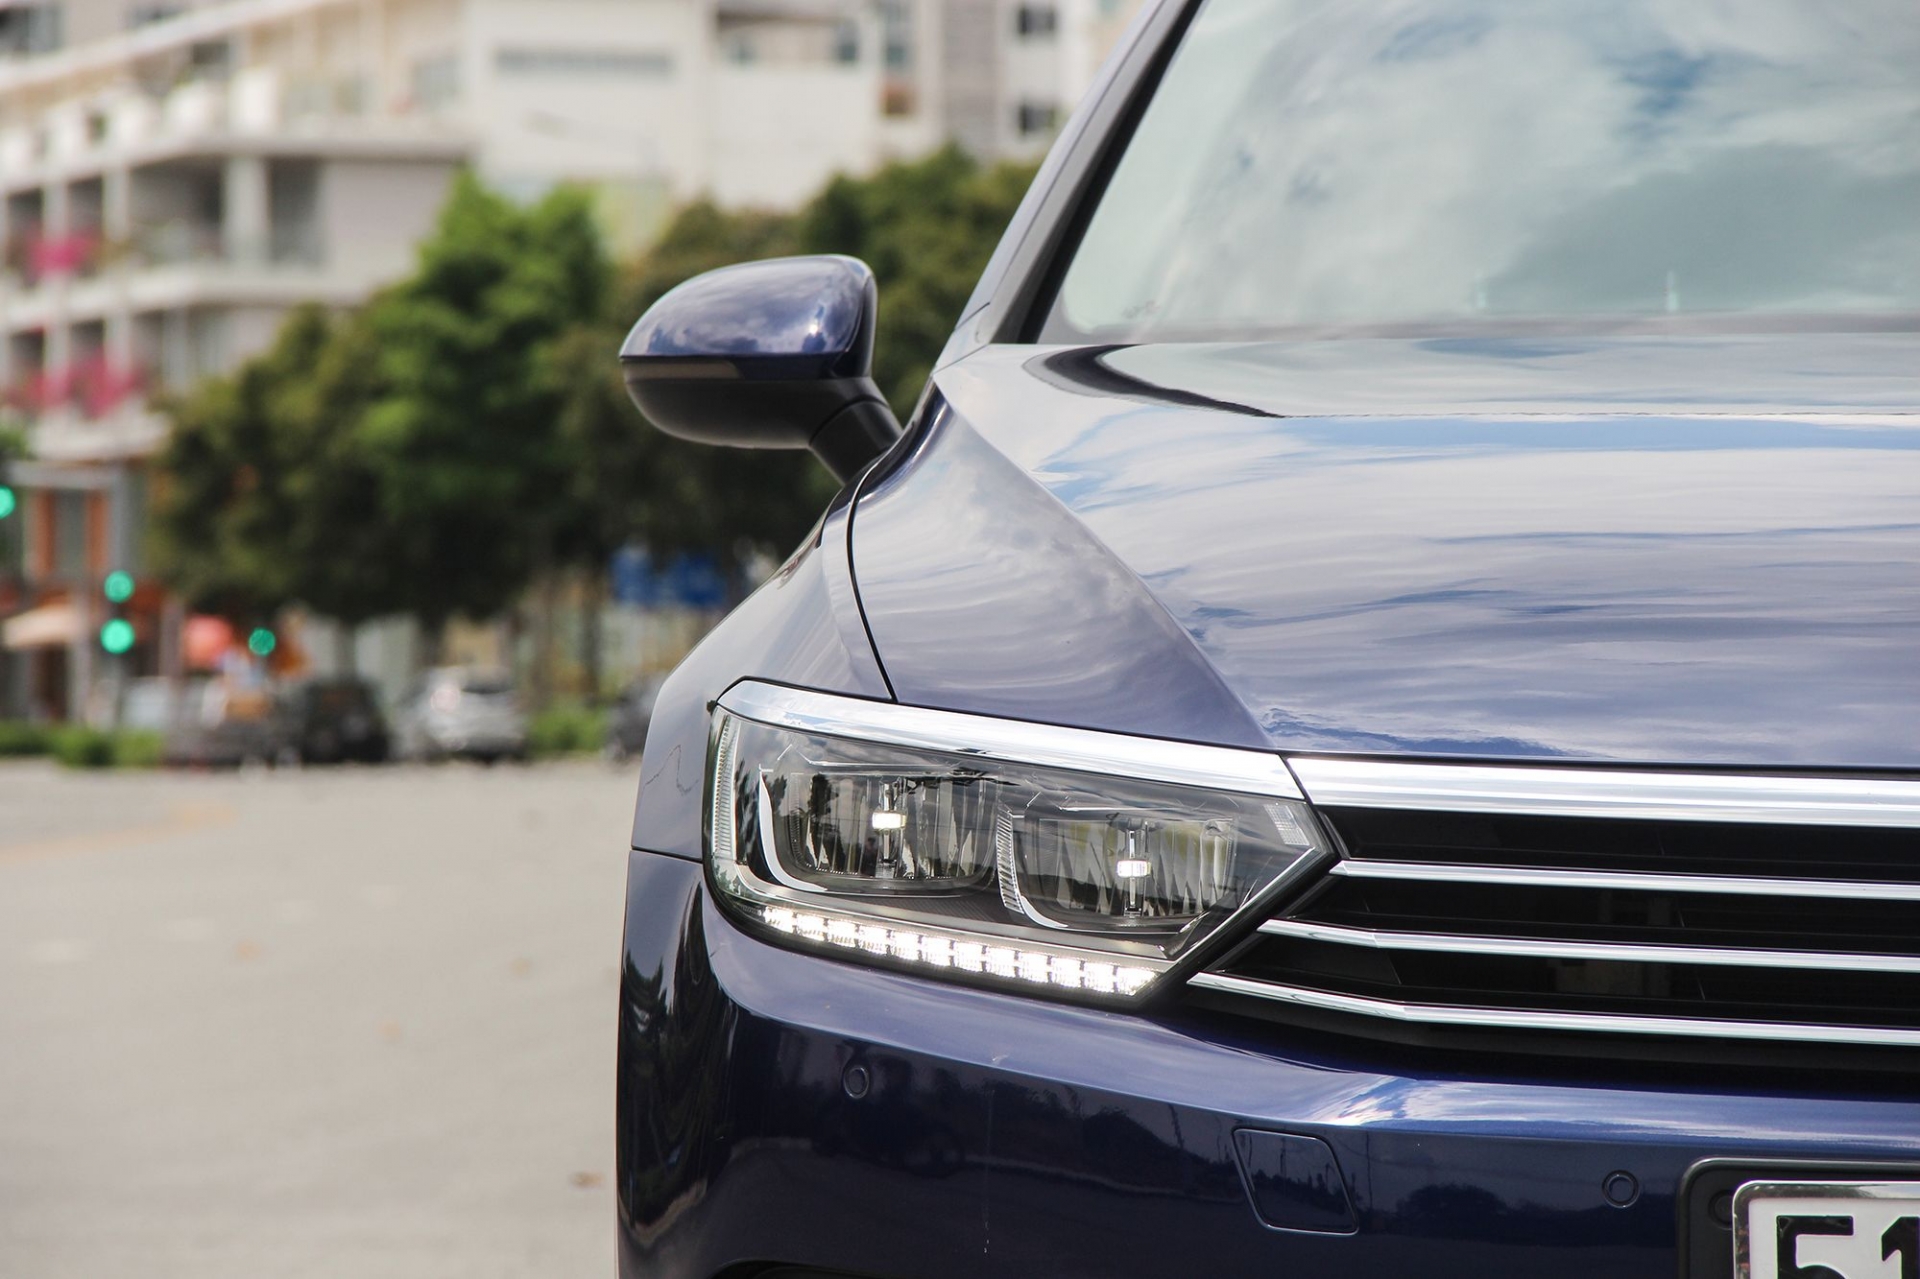 Dọn kho, mẫu sedan hạng D này đang giảm “sốc” giá hơn 200 triệu đồng - ảnh 7